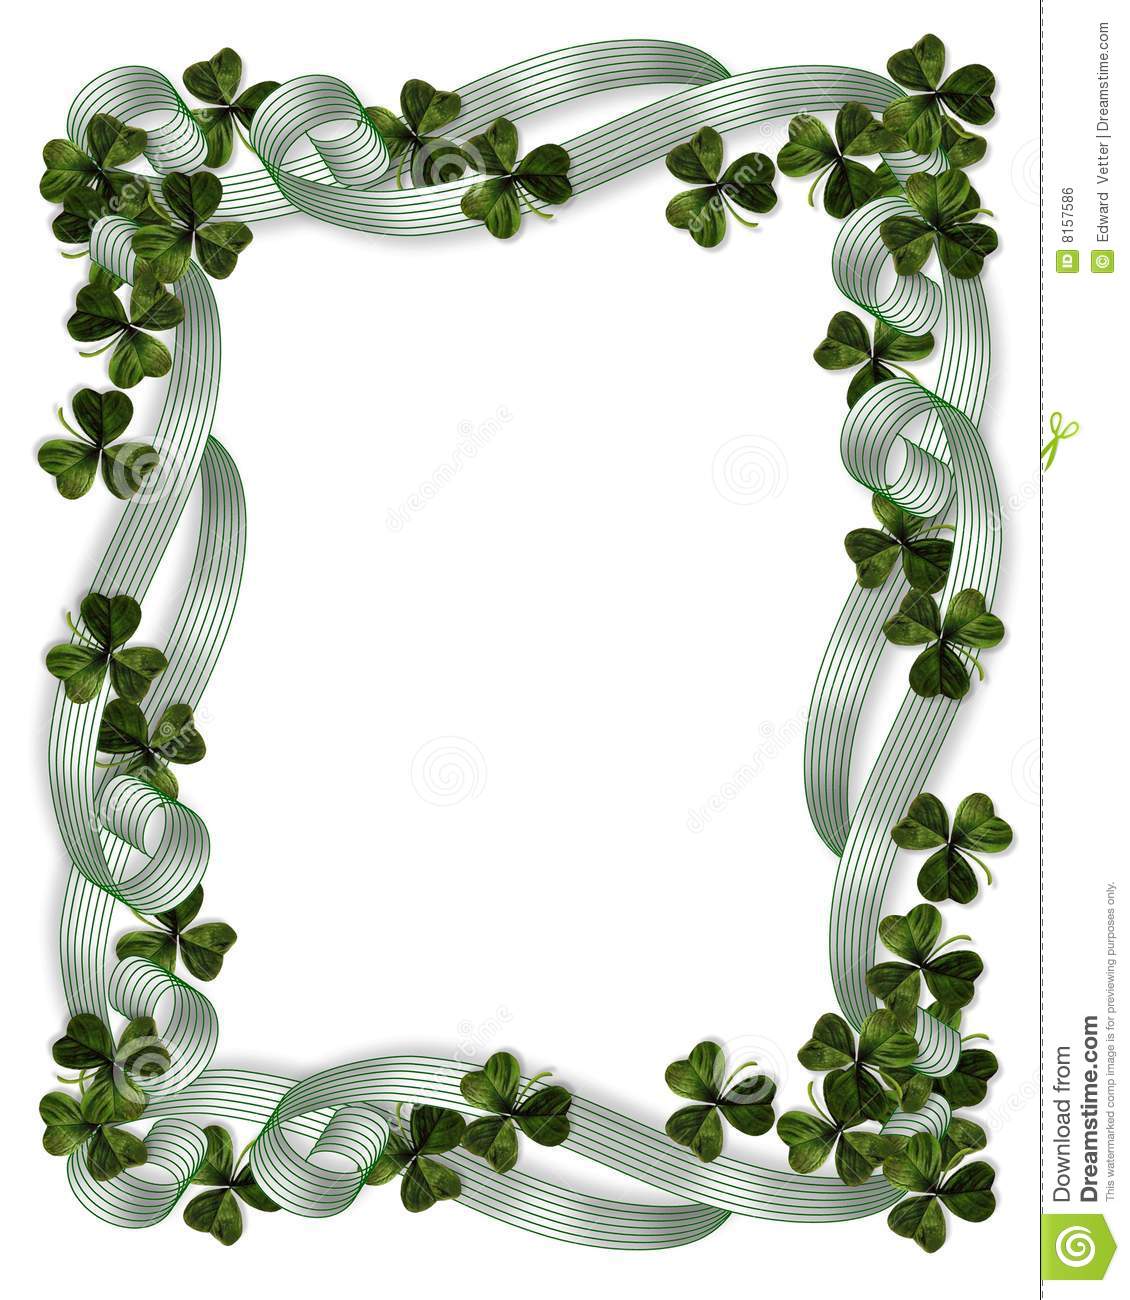 St Patrick S Day Border Shamrocks Royalty Free Stock Image   Image